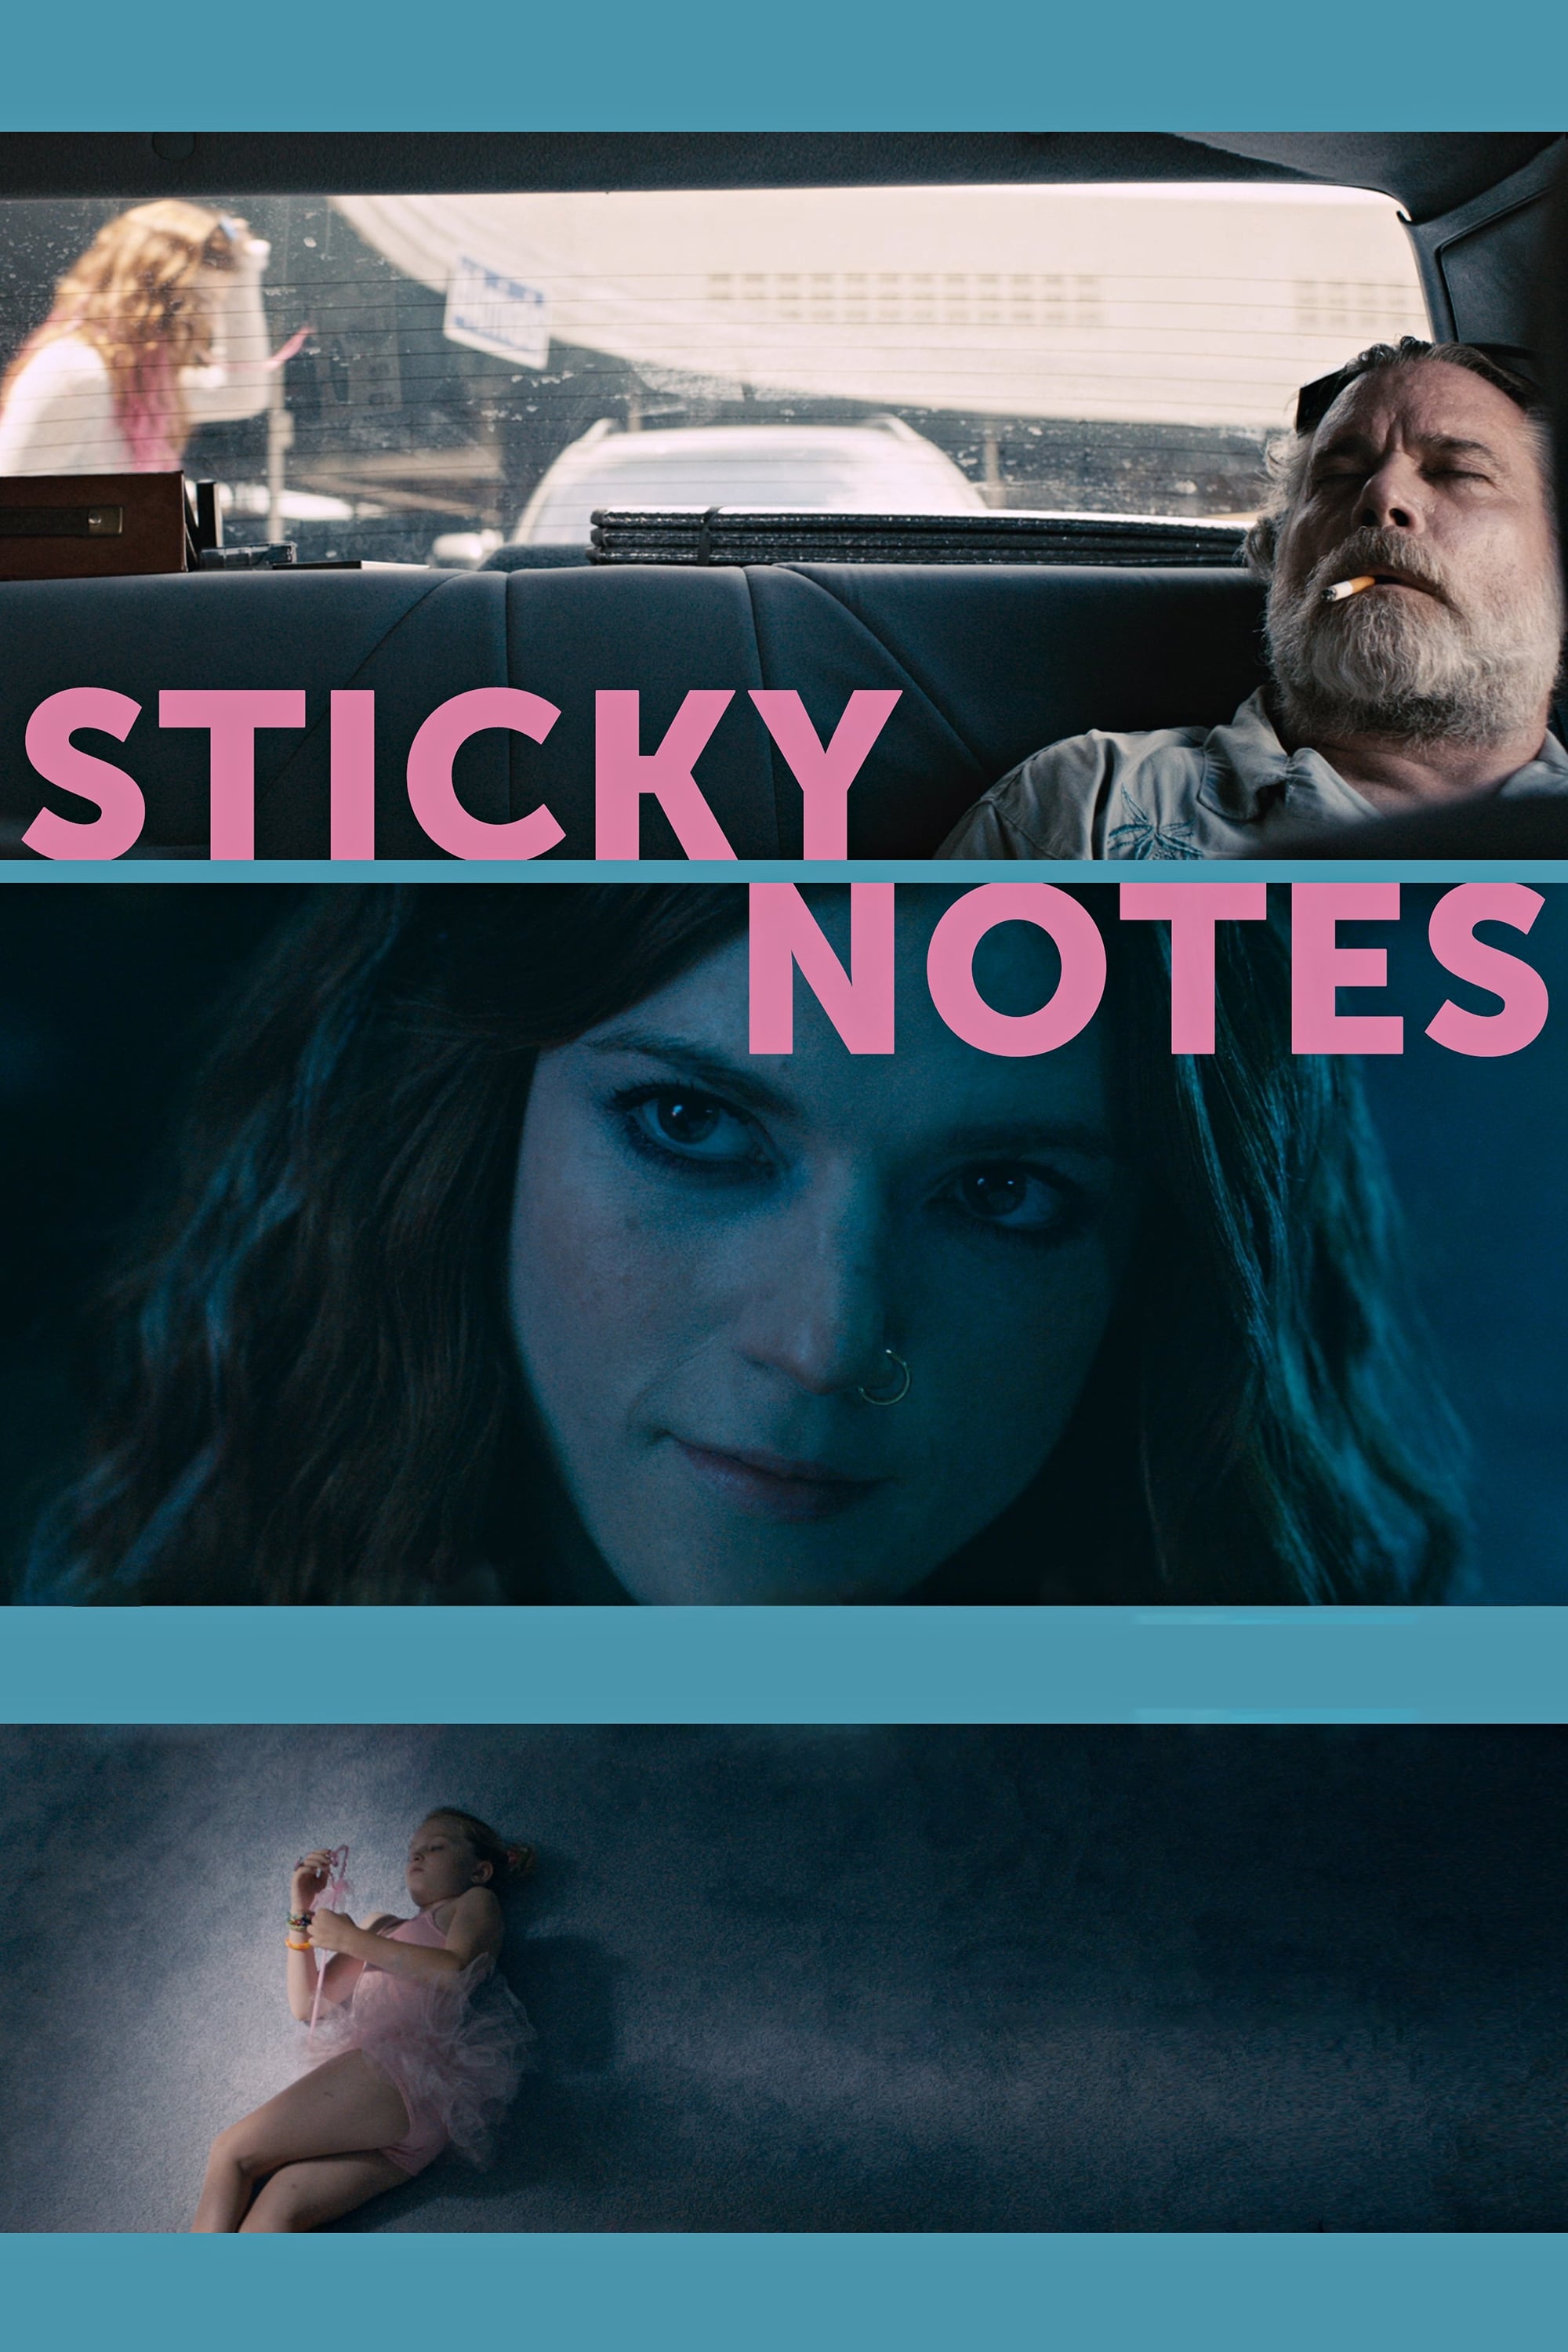 Sticky Notes Movie Poster